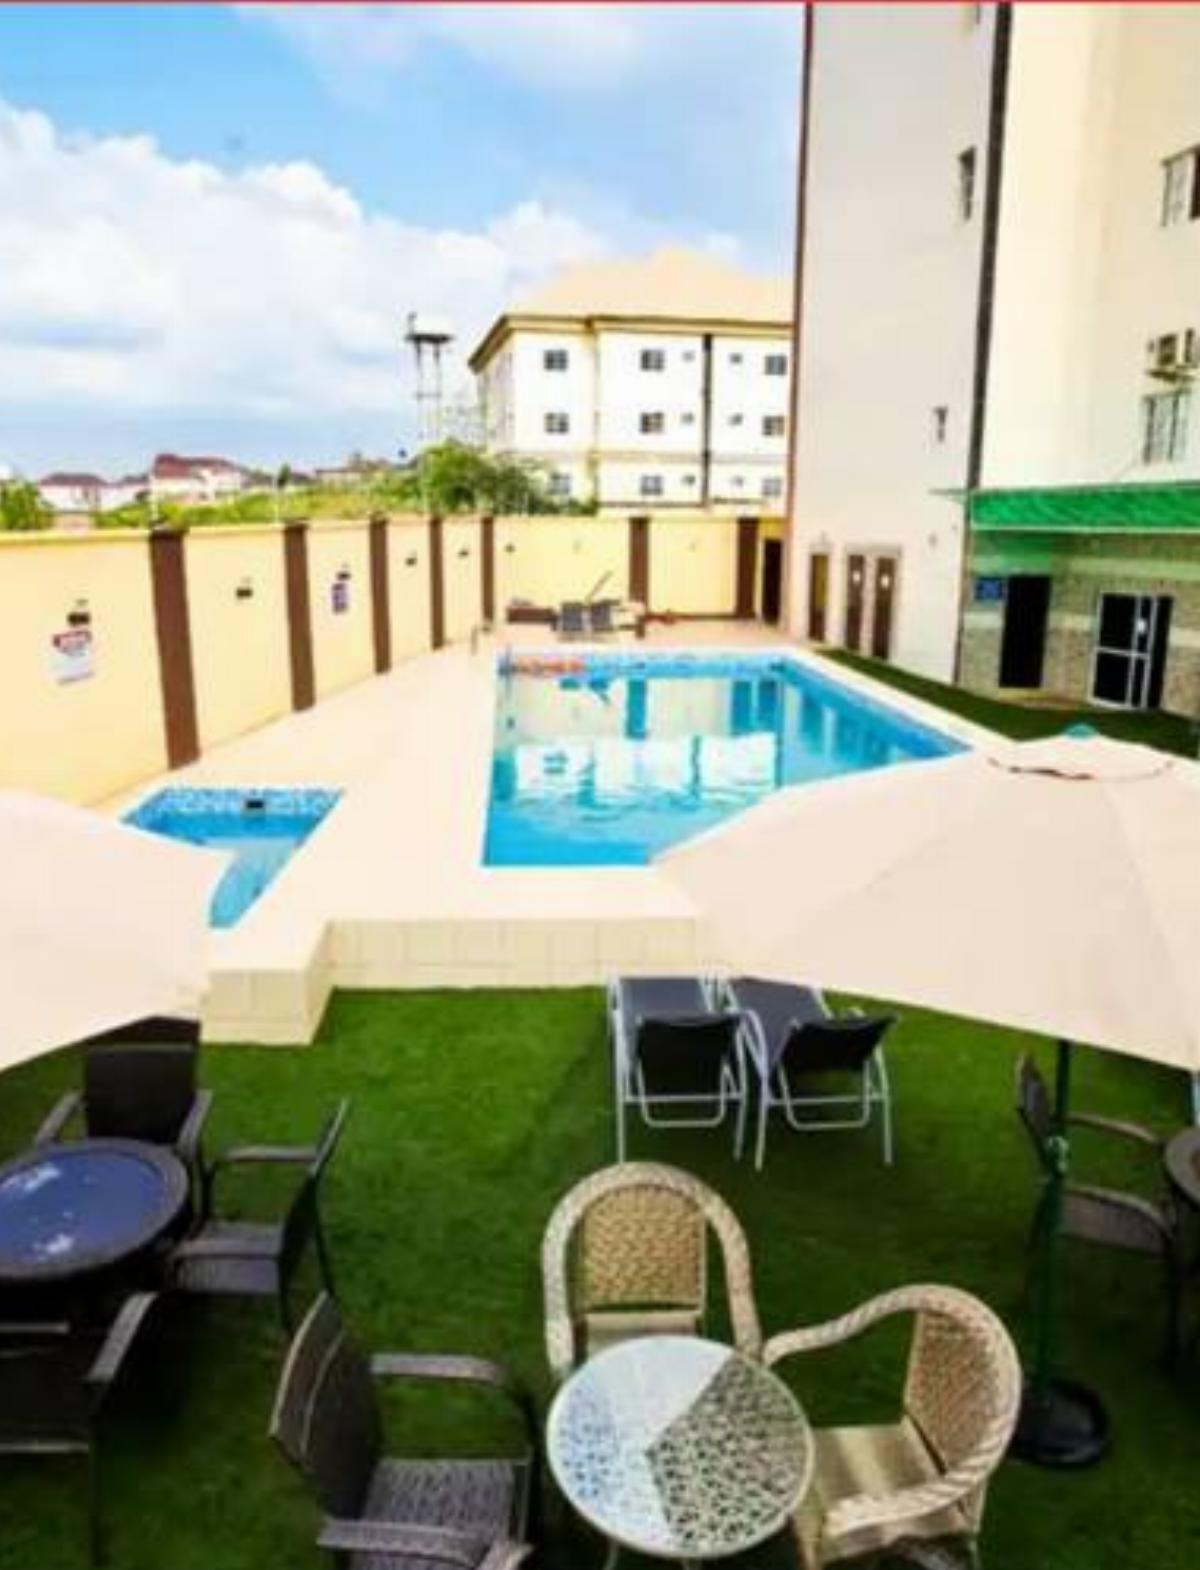 Aplus Hotel And Suites Hotel Ilepete Nigeria